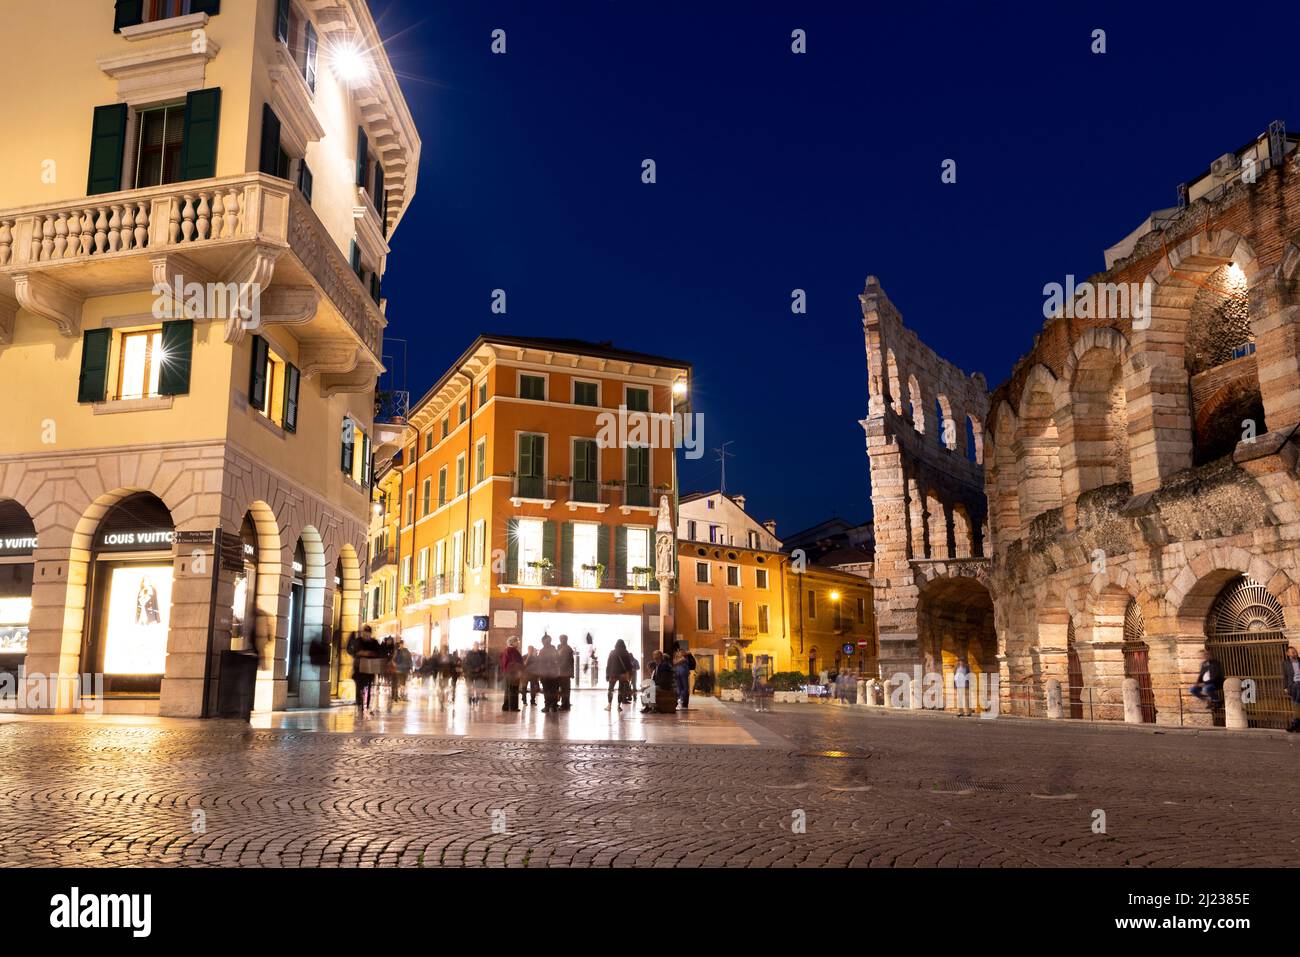 Italie, Vérone, l'Arena di Verona, un amphithéâtre romain au crépuscule avec des gens dans la vieille ville historique au crépuscule. Banque D'Images